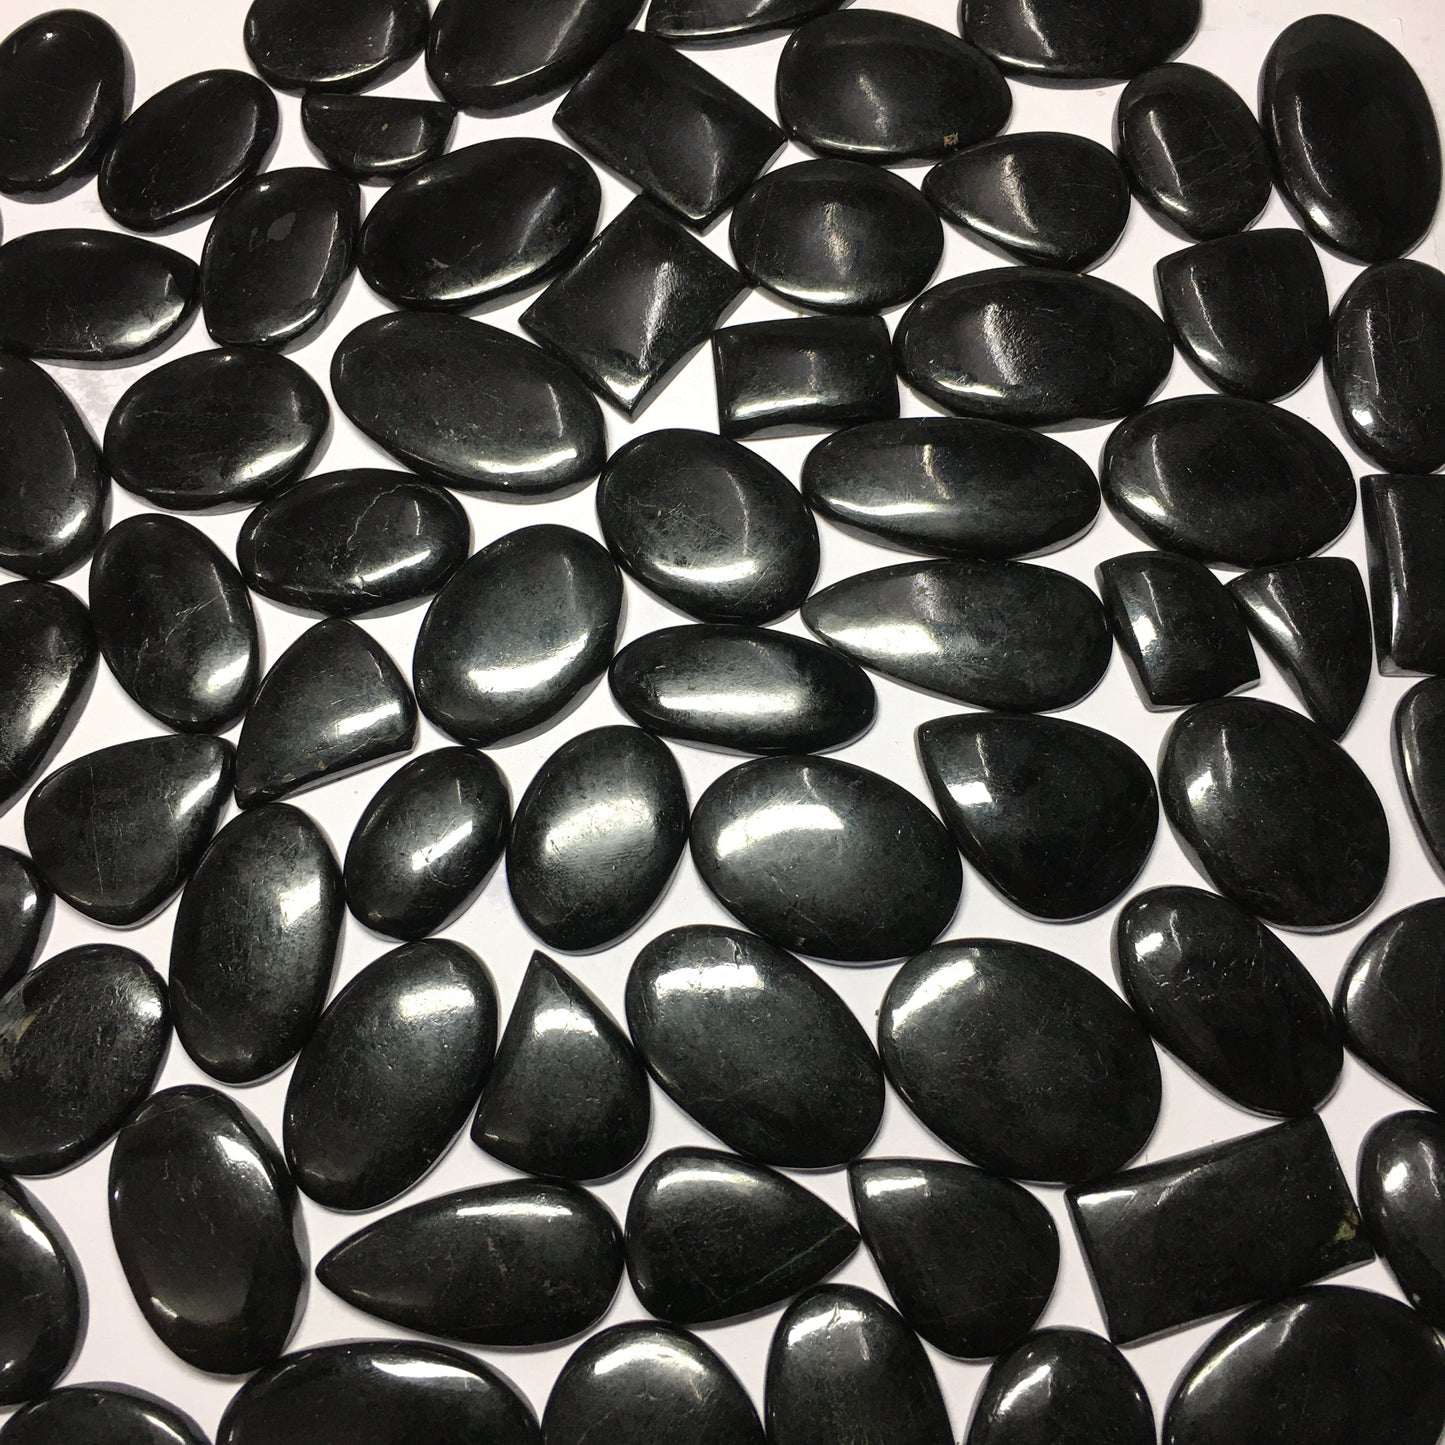 Natural Black Tourmaline Cabochon Loose Gemstone (Natural)